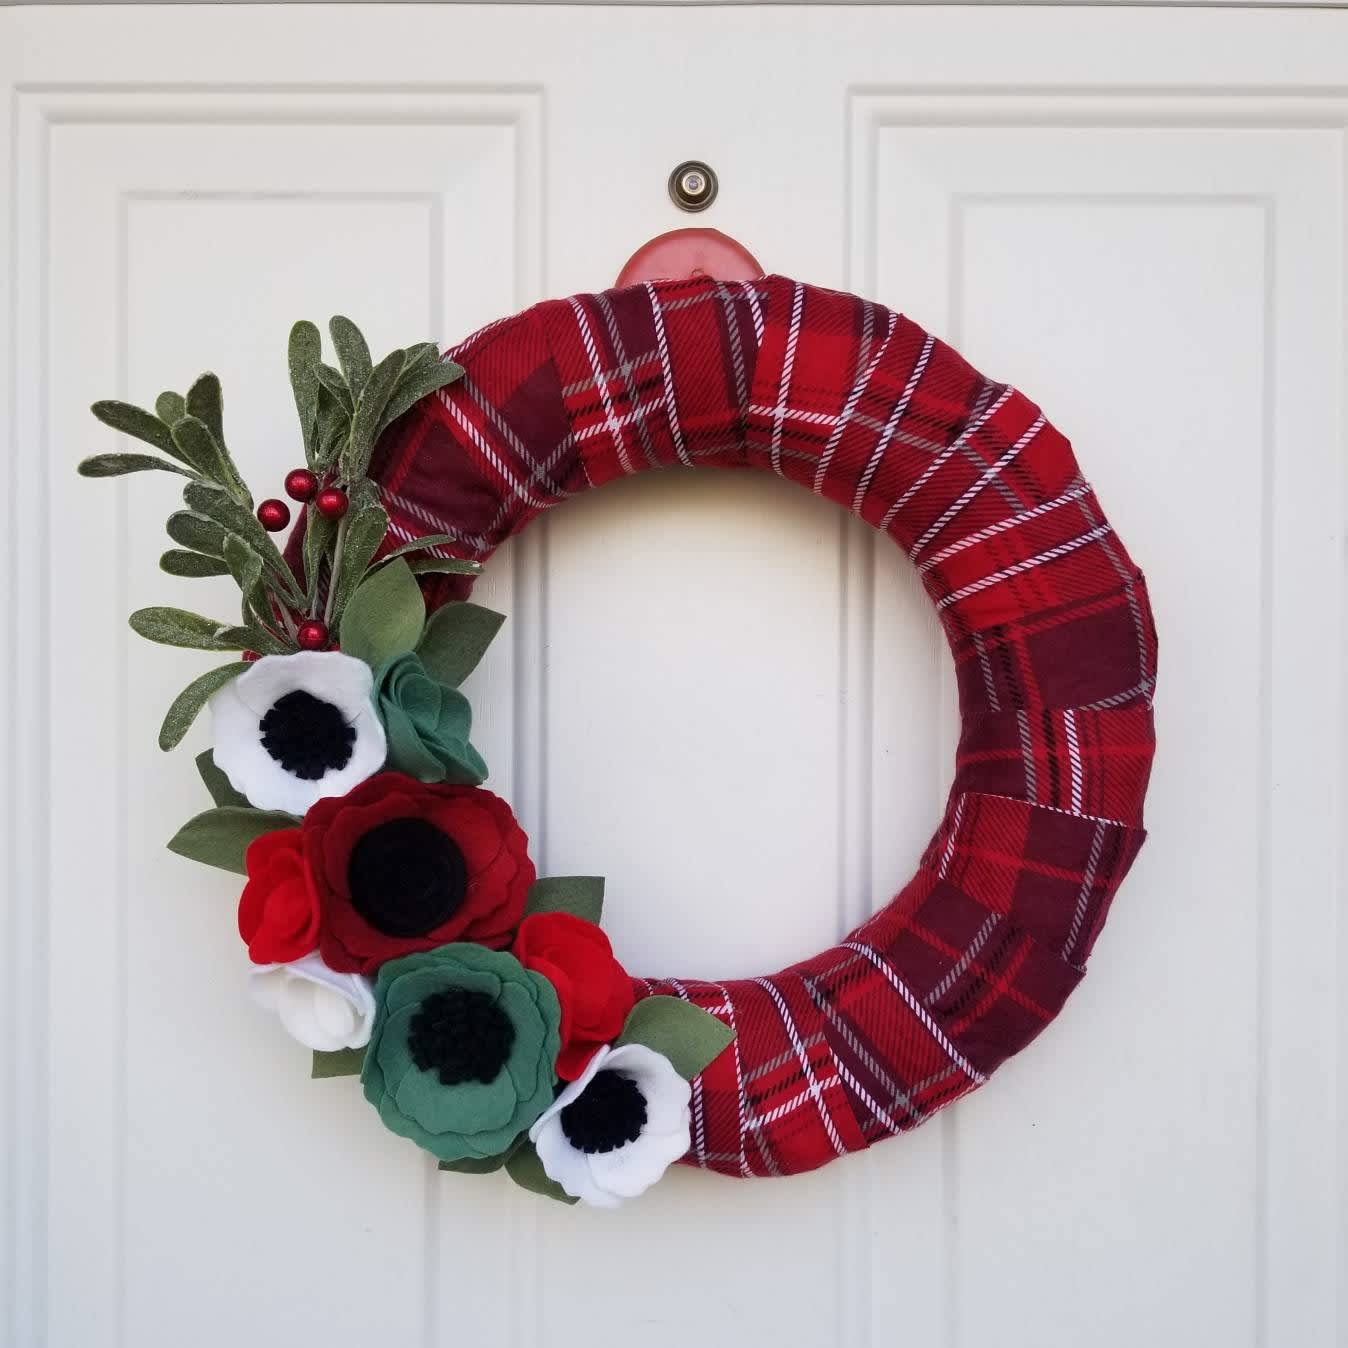 All Season Wreath Yarn Wreath Seafoam Green Wreath Hygge Wreath Winter Wreath Teal Wreath